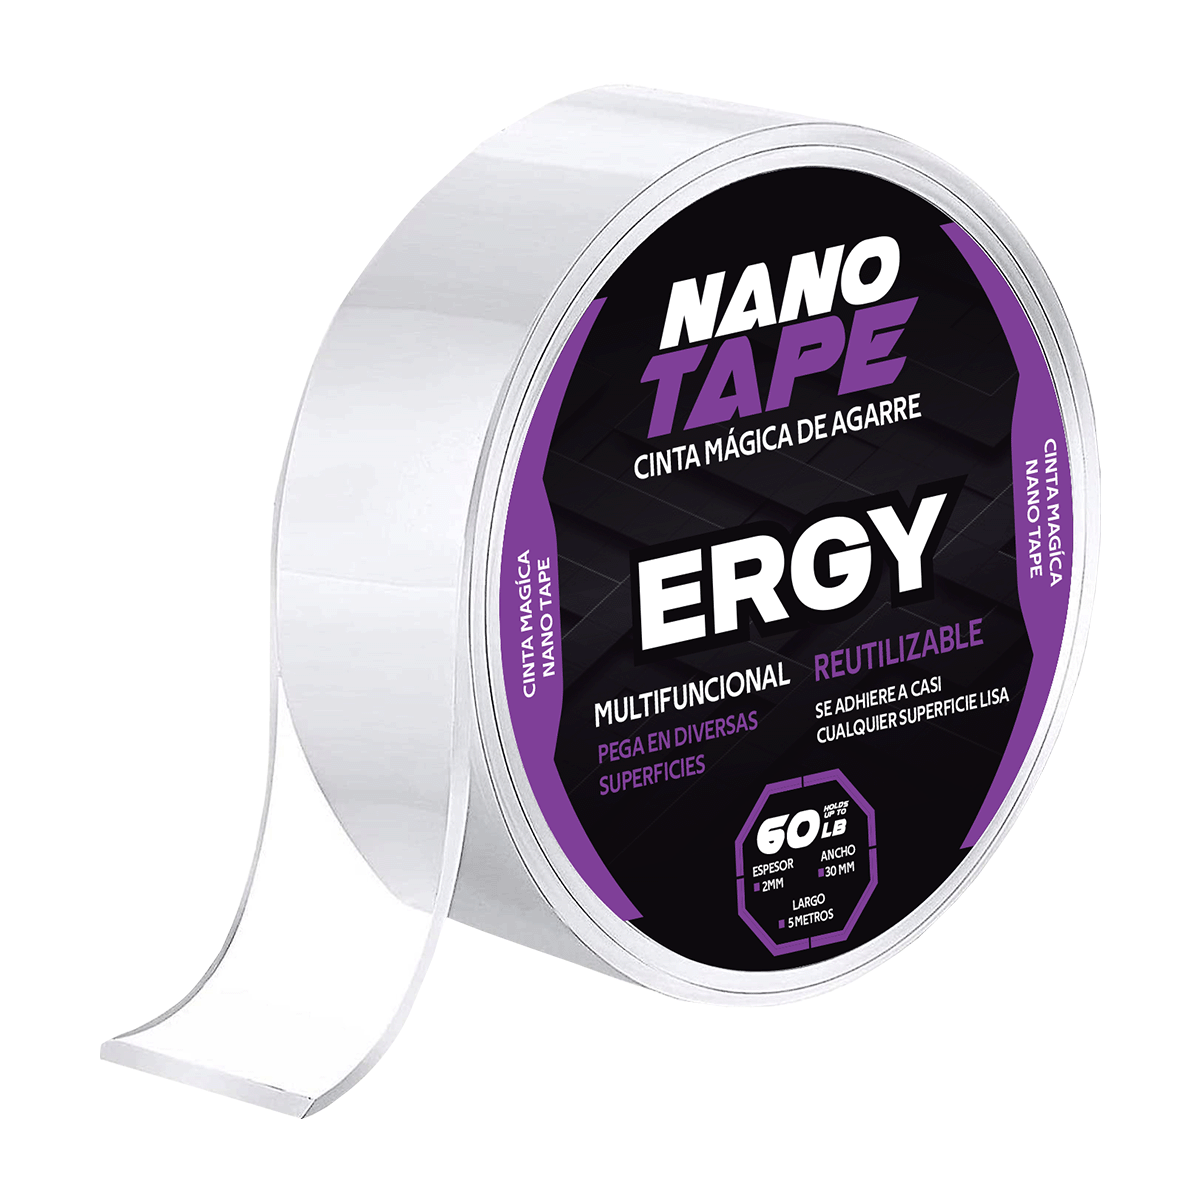 Cinta mágica doble cara reutilizable nano tape ERGY.